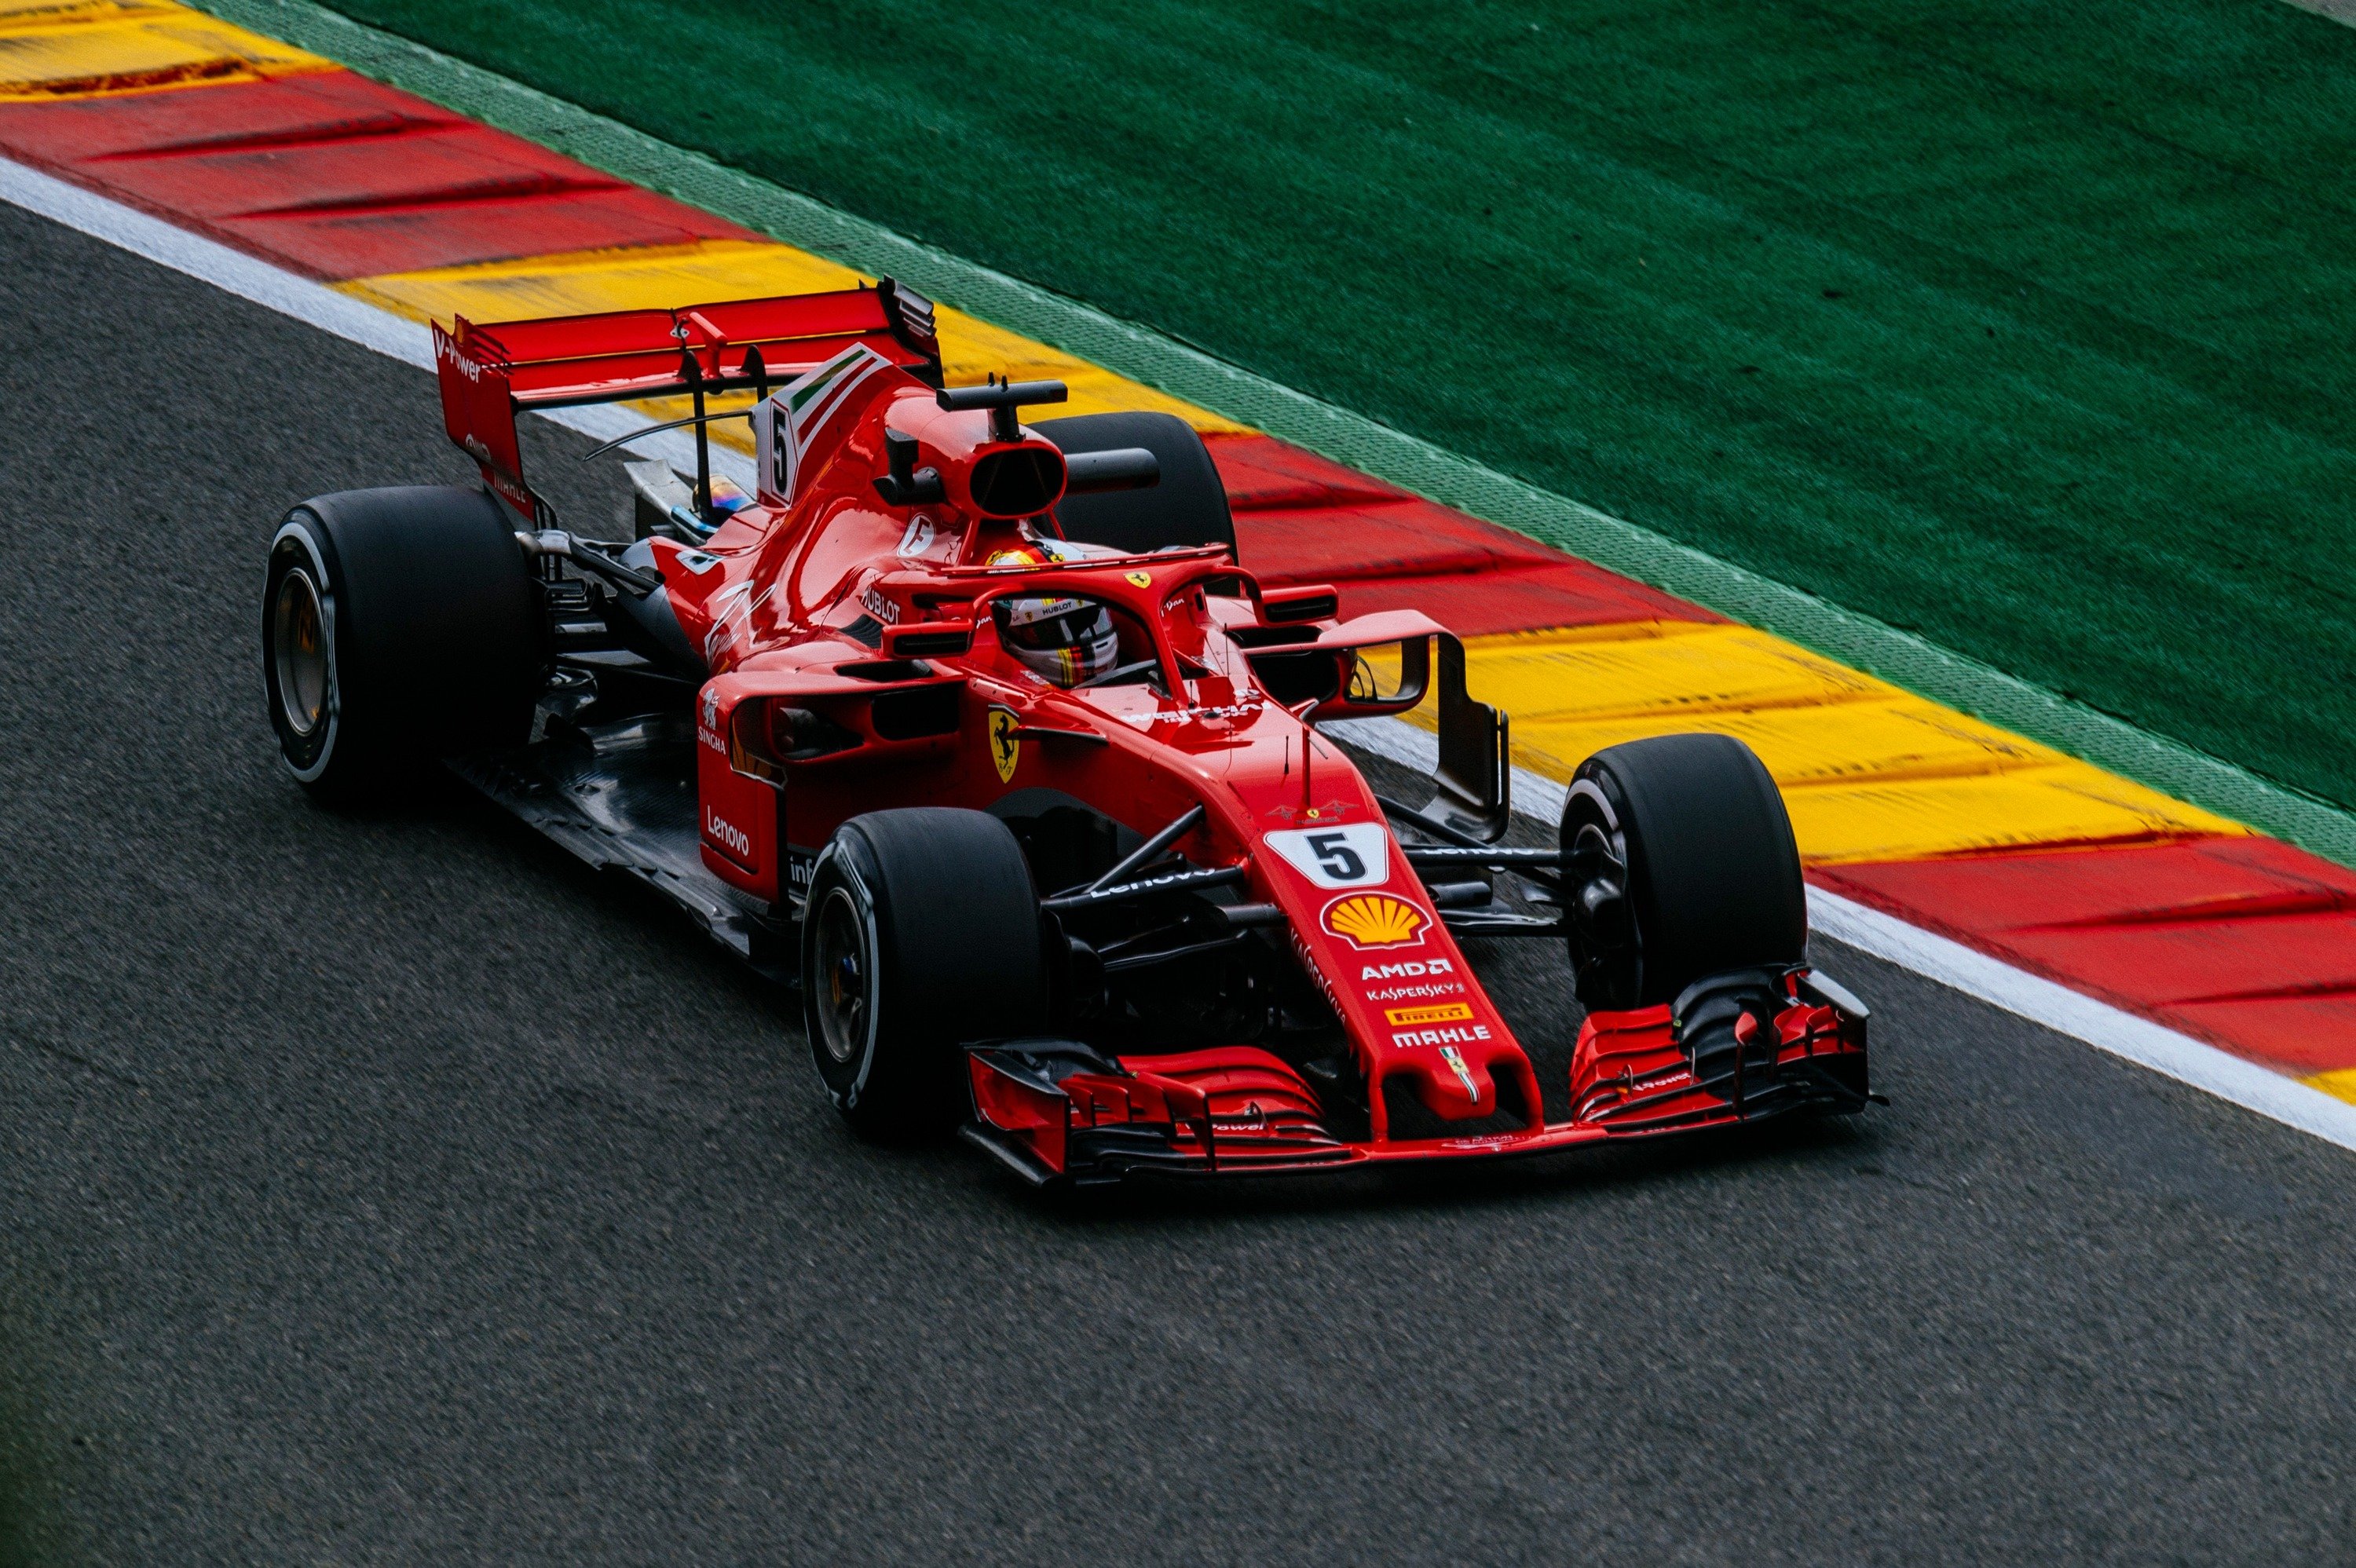 F1, GP Belgio 2018, Vettel: &laquo;Avrei potuto fare di pi&ugrave;&raquo;